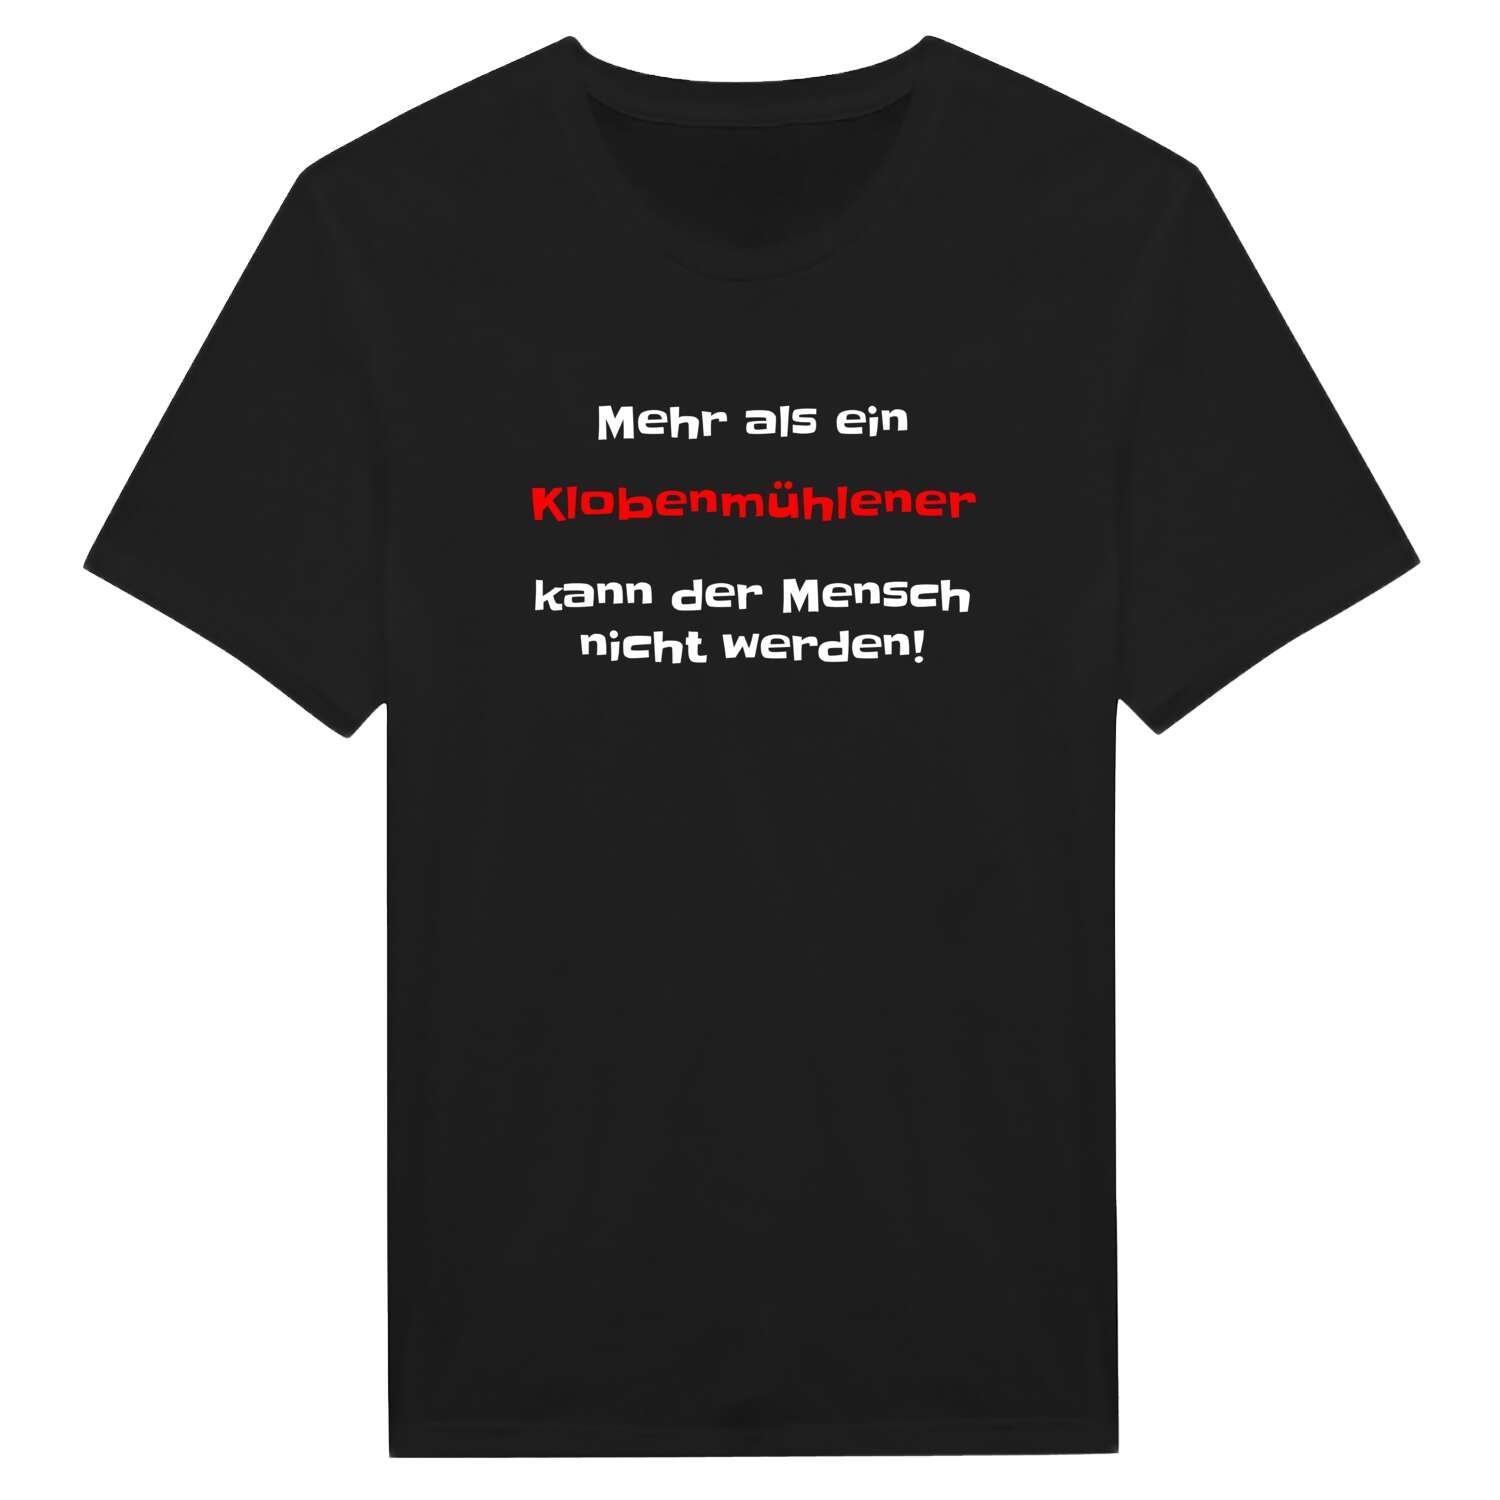 Klobenmühle T-Shirt »Mehr als ein«